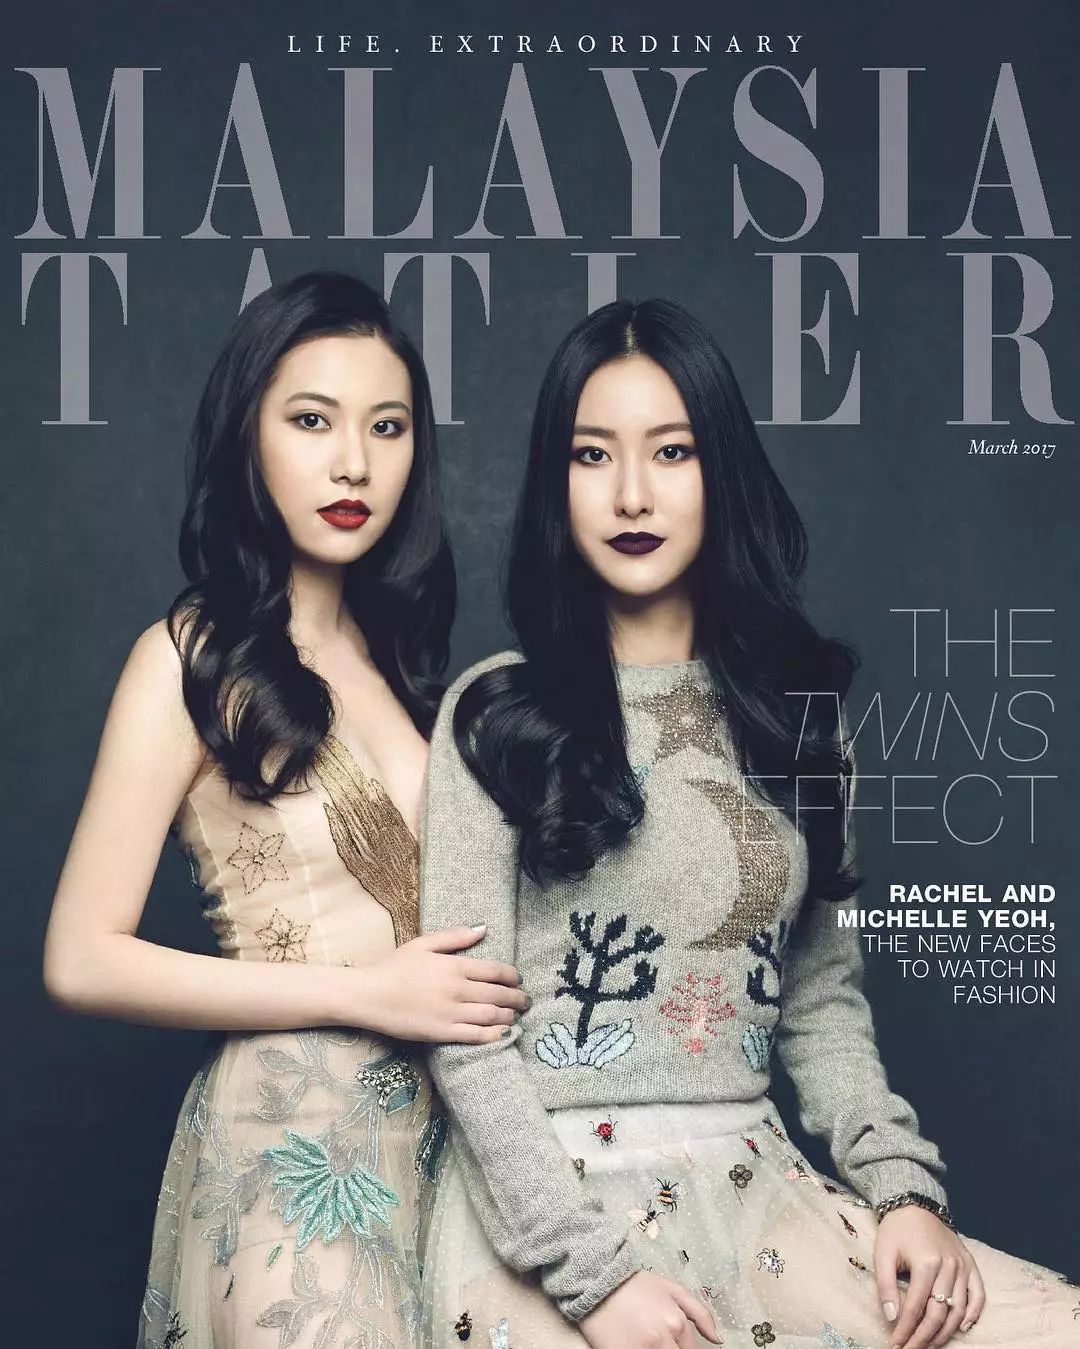 真正的疯狂亚洲富豪这对时尚姐妹花的生活比电影壕